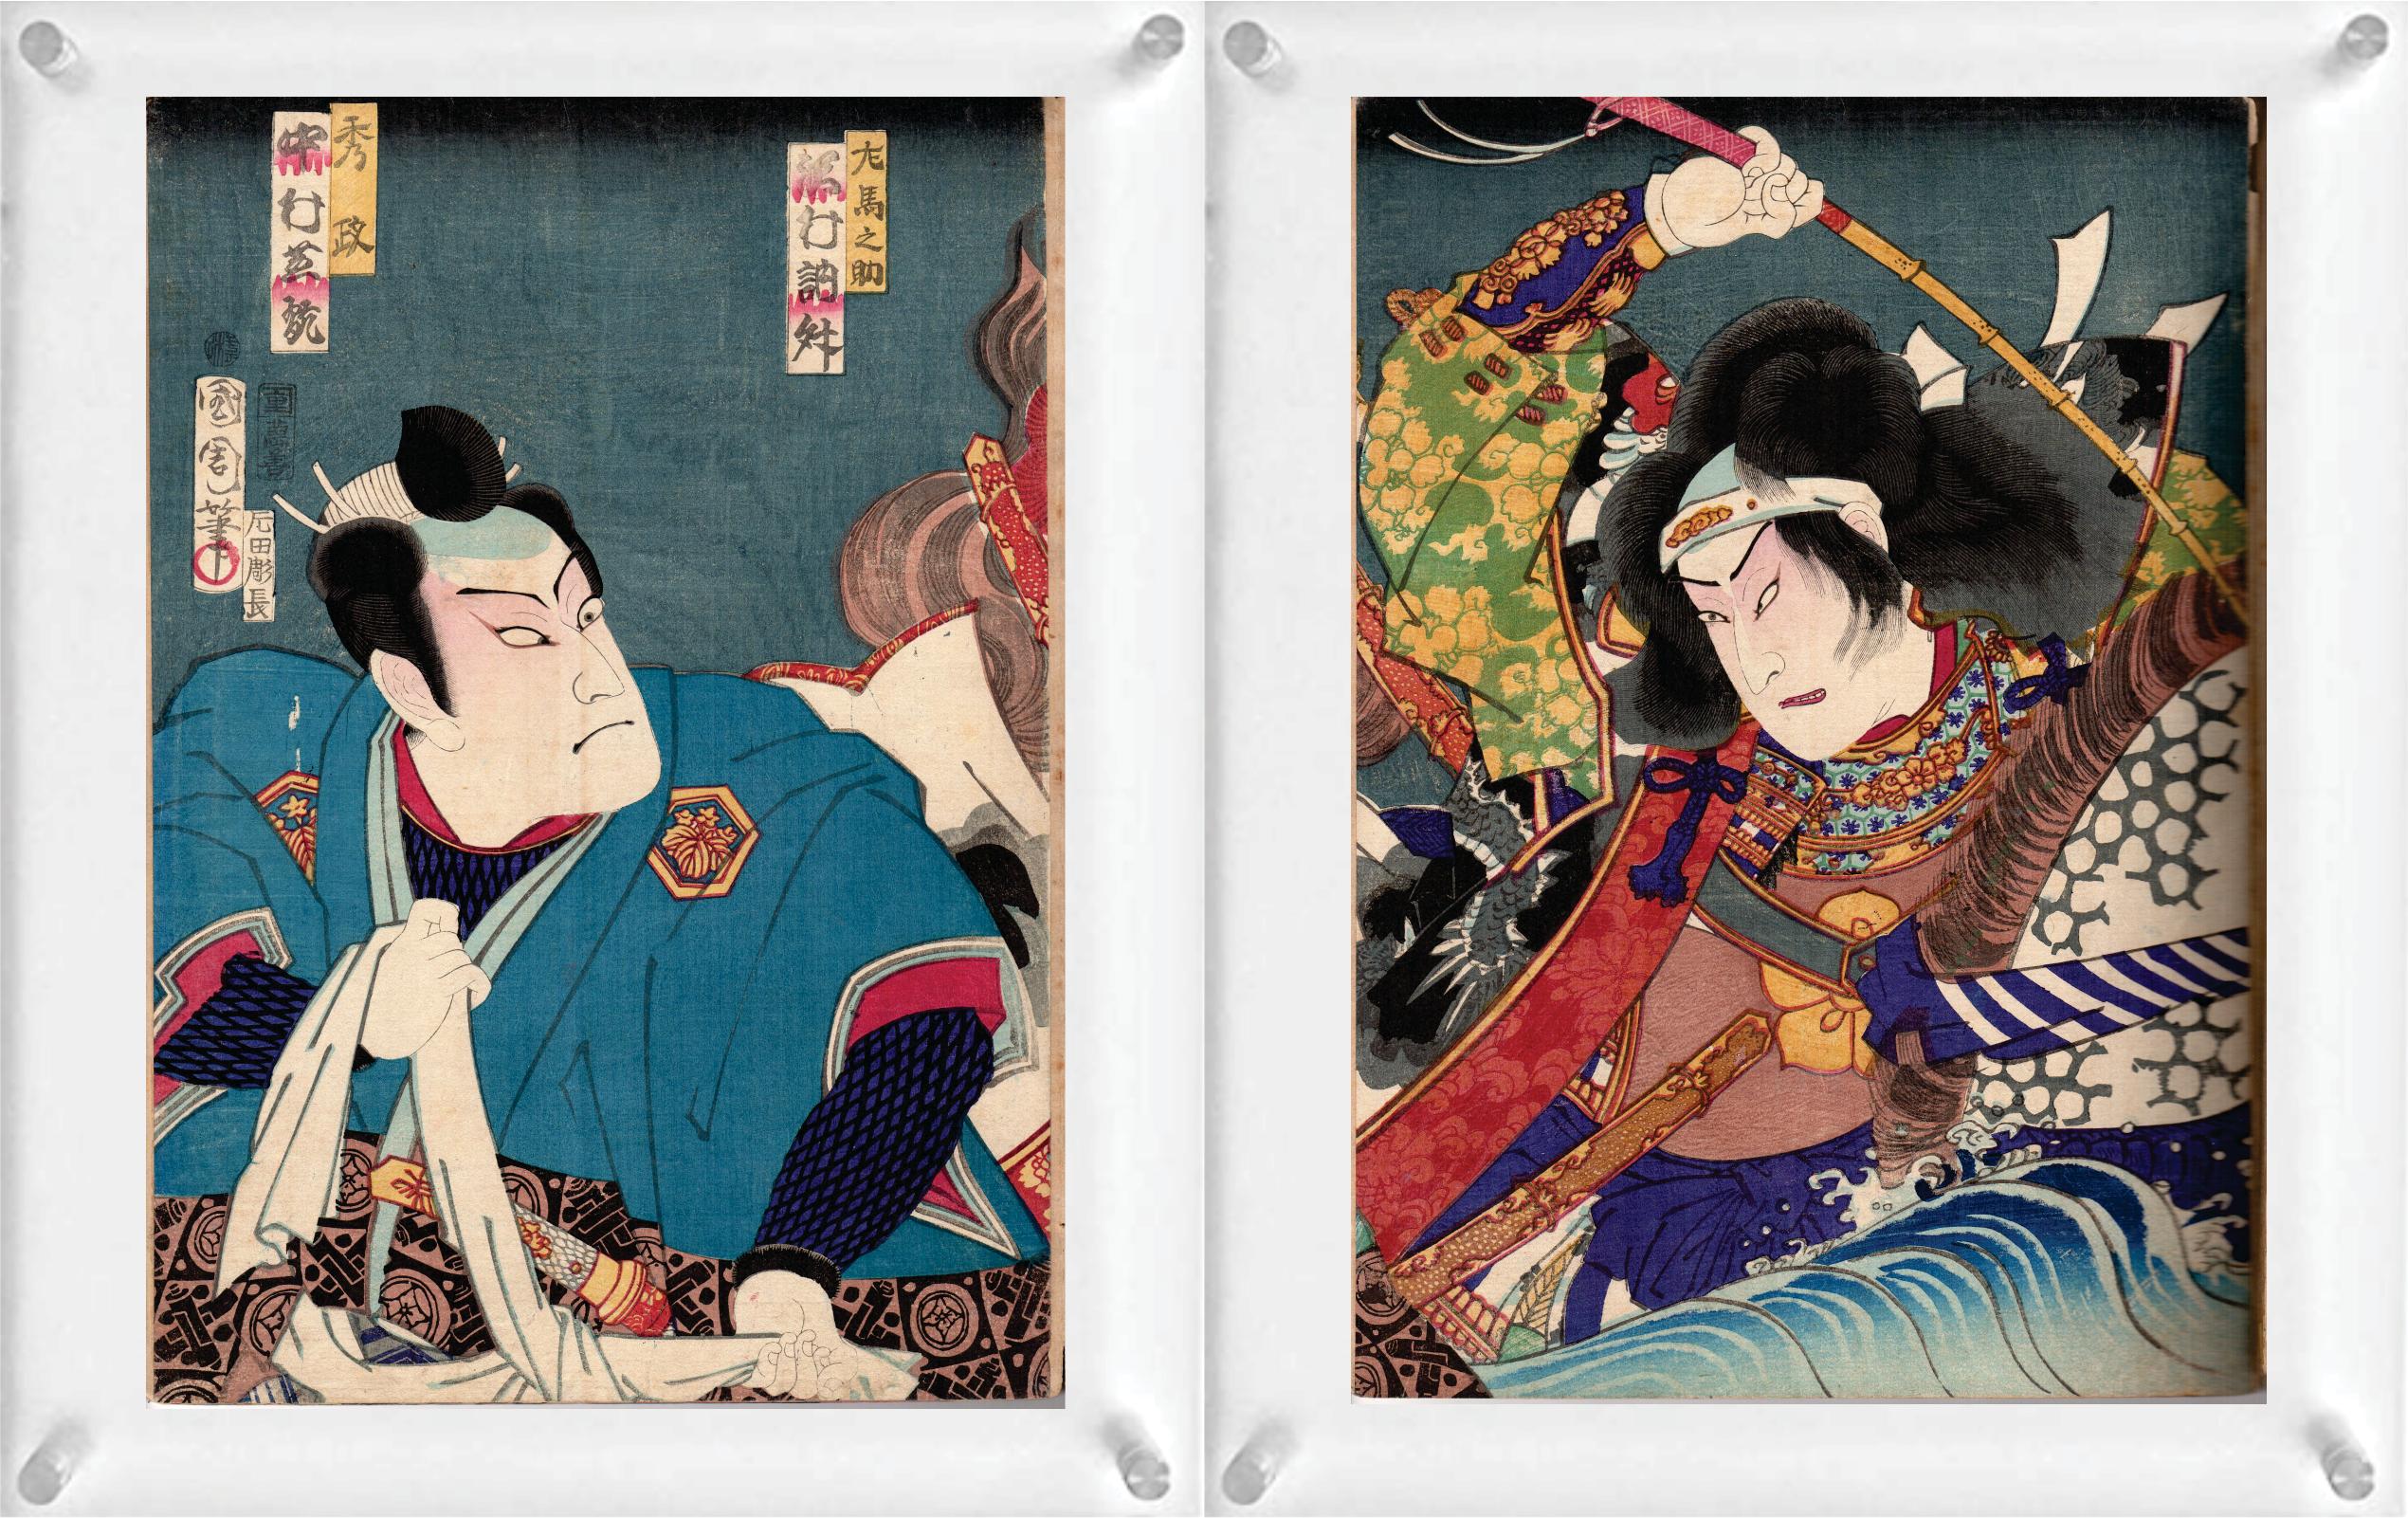 Vier japanische Farbholzschnitte (Doppelseite) von Toyohara Kunichika (Diptychon) und Shosai Ikkei - aus Sechsunddreißig Comics der berühmten Orte von Tokio.

Hinweis: Es handelt sich nur um zwei Holzschnitte mit 4 Bildern. Sie sind doppelseitig mit